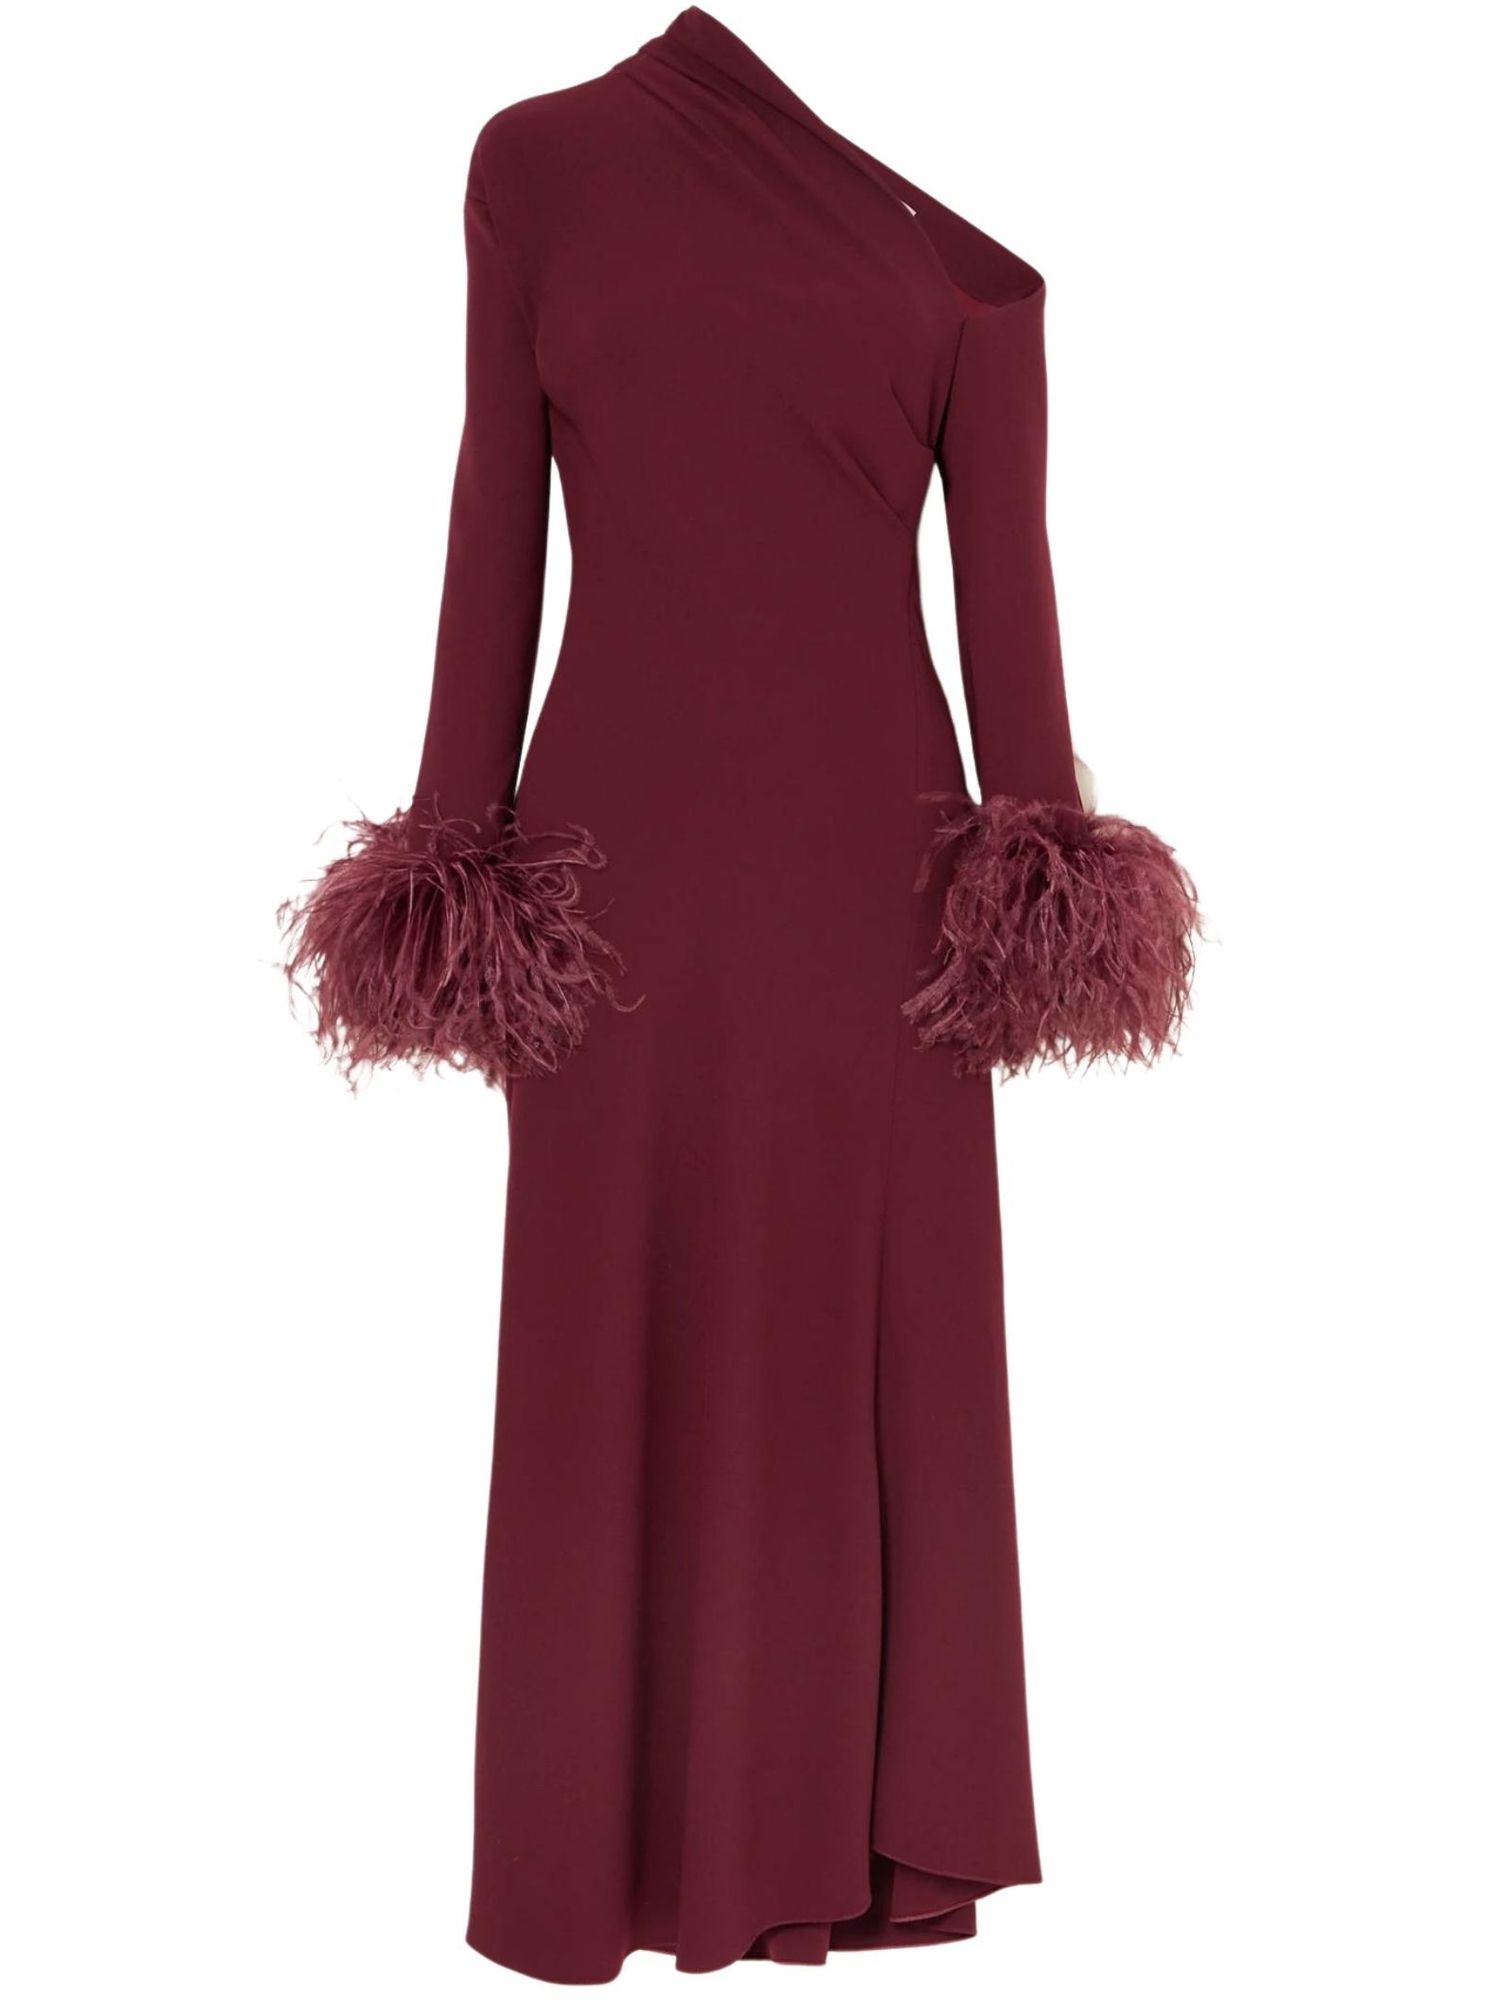 Vogue Scandinavia - 10 dresses to wear when attending a winter wedding